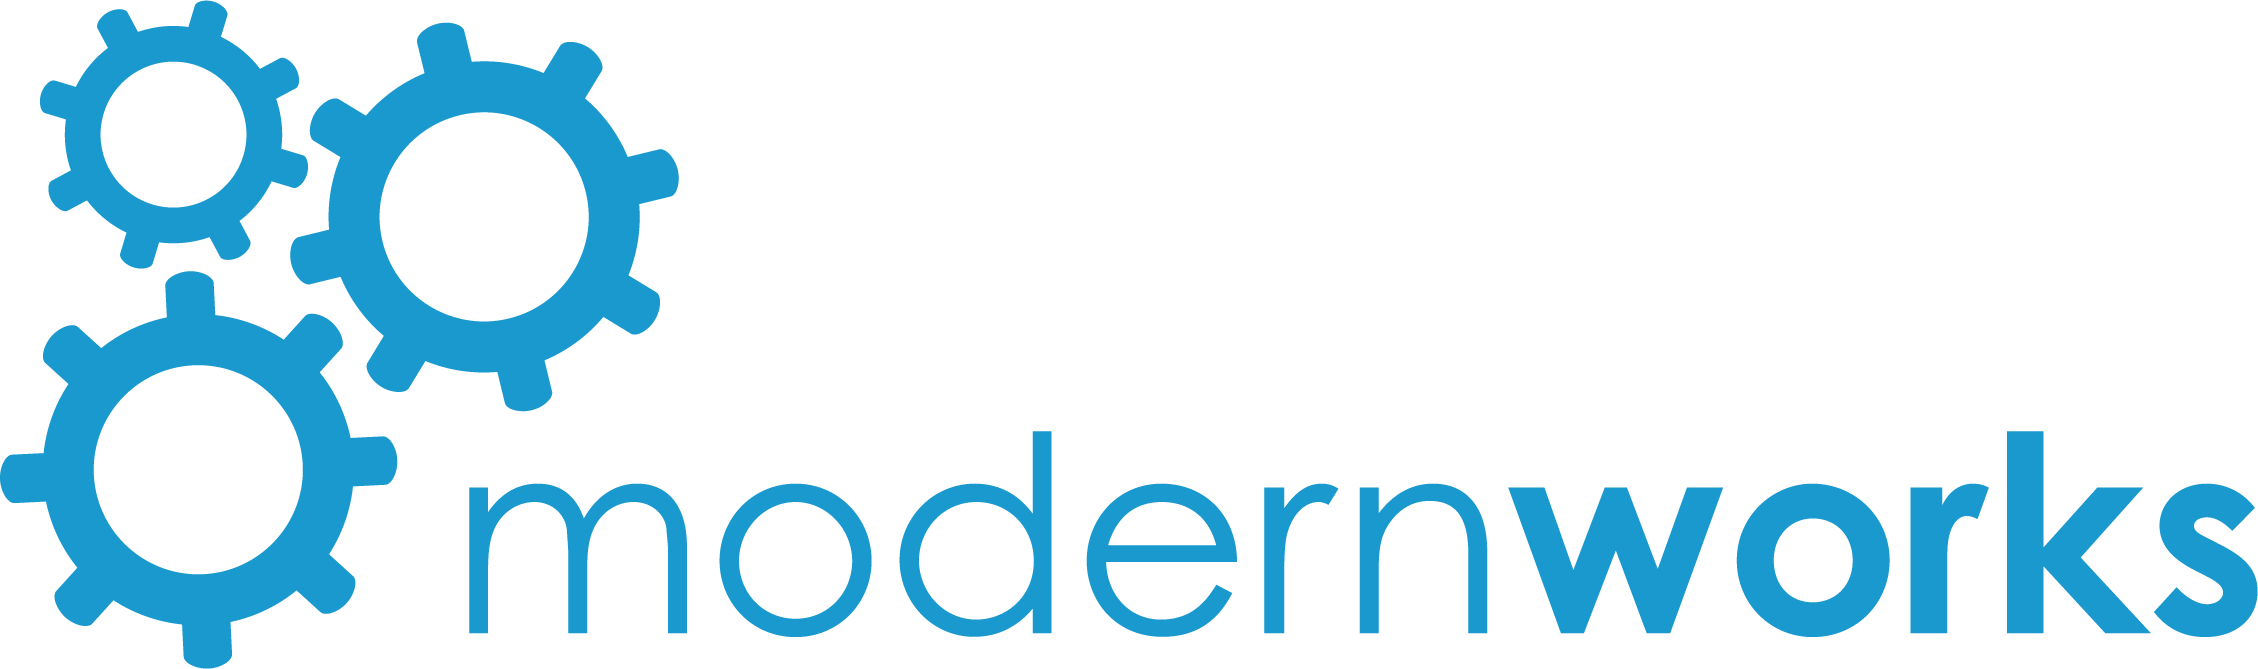 Blue ModernWorks logo